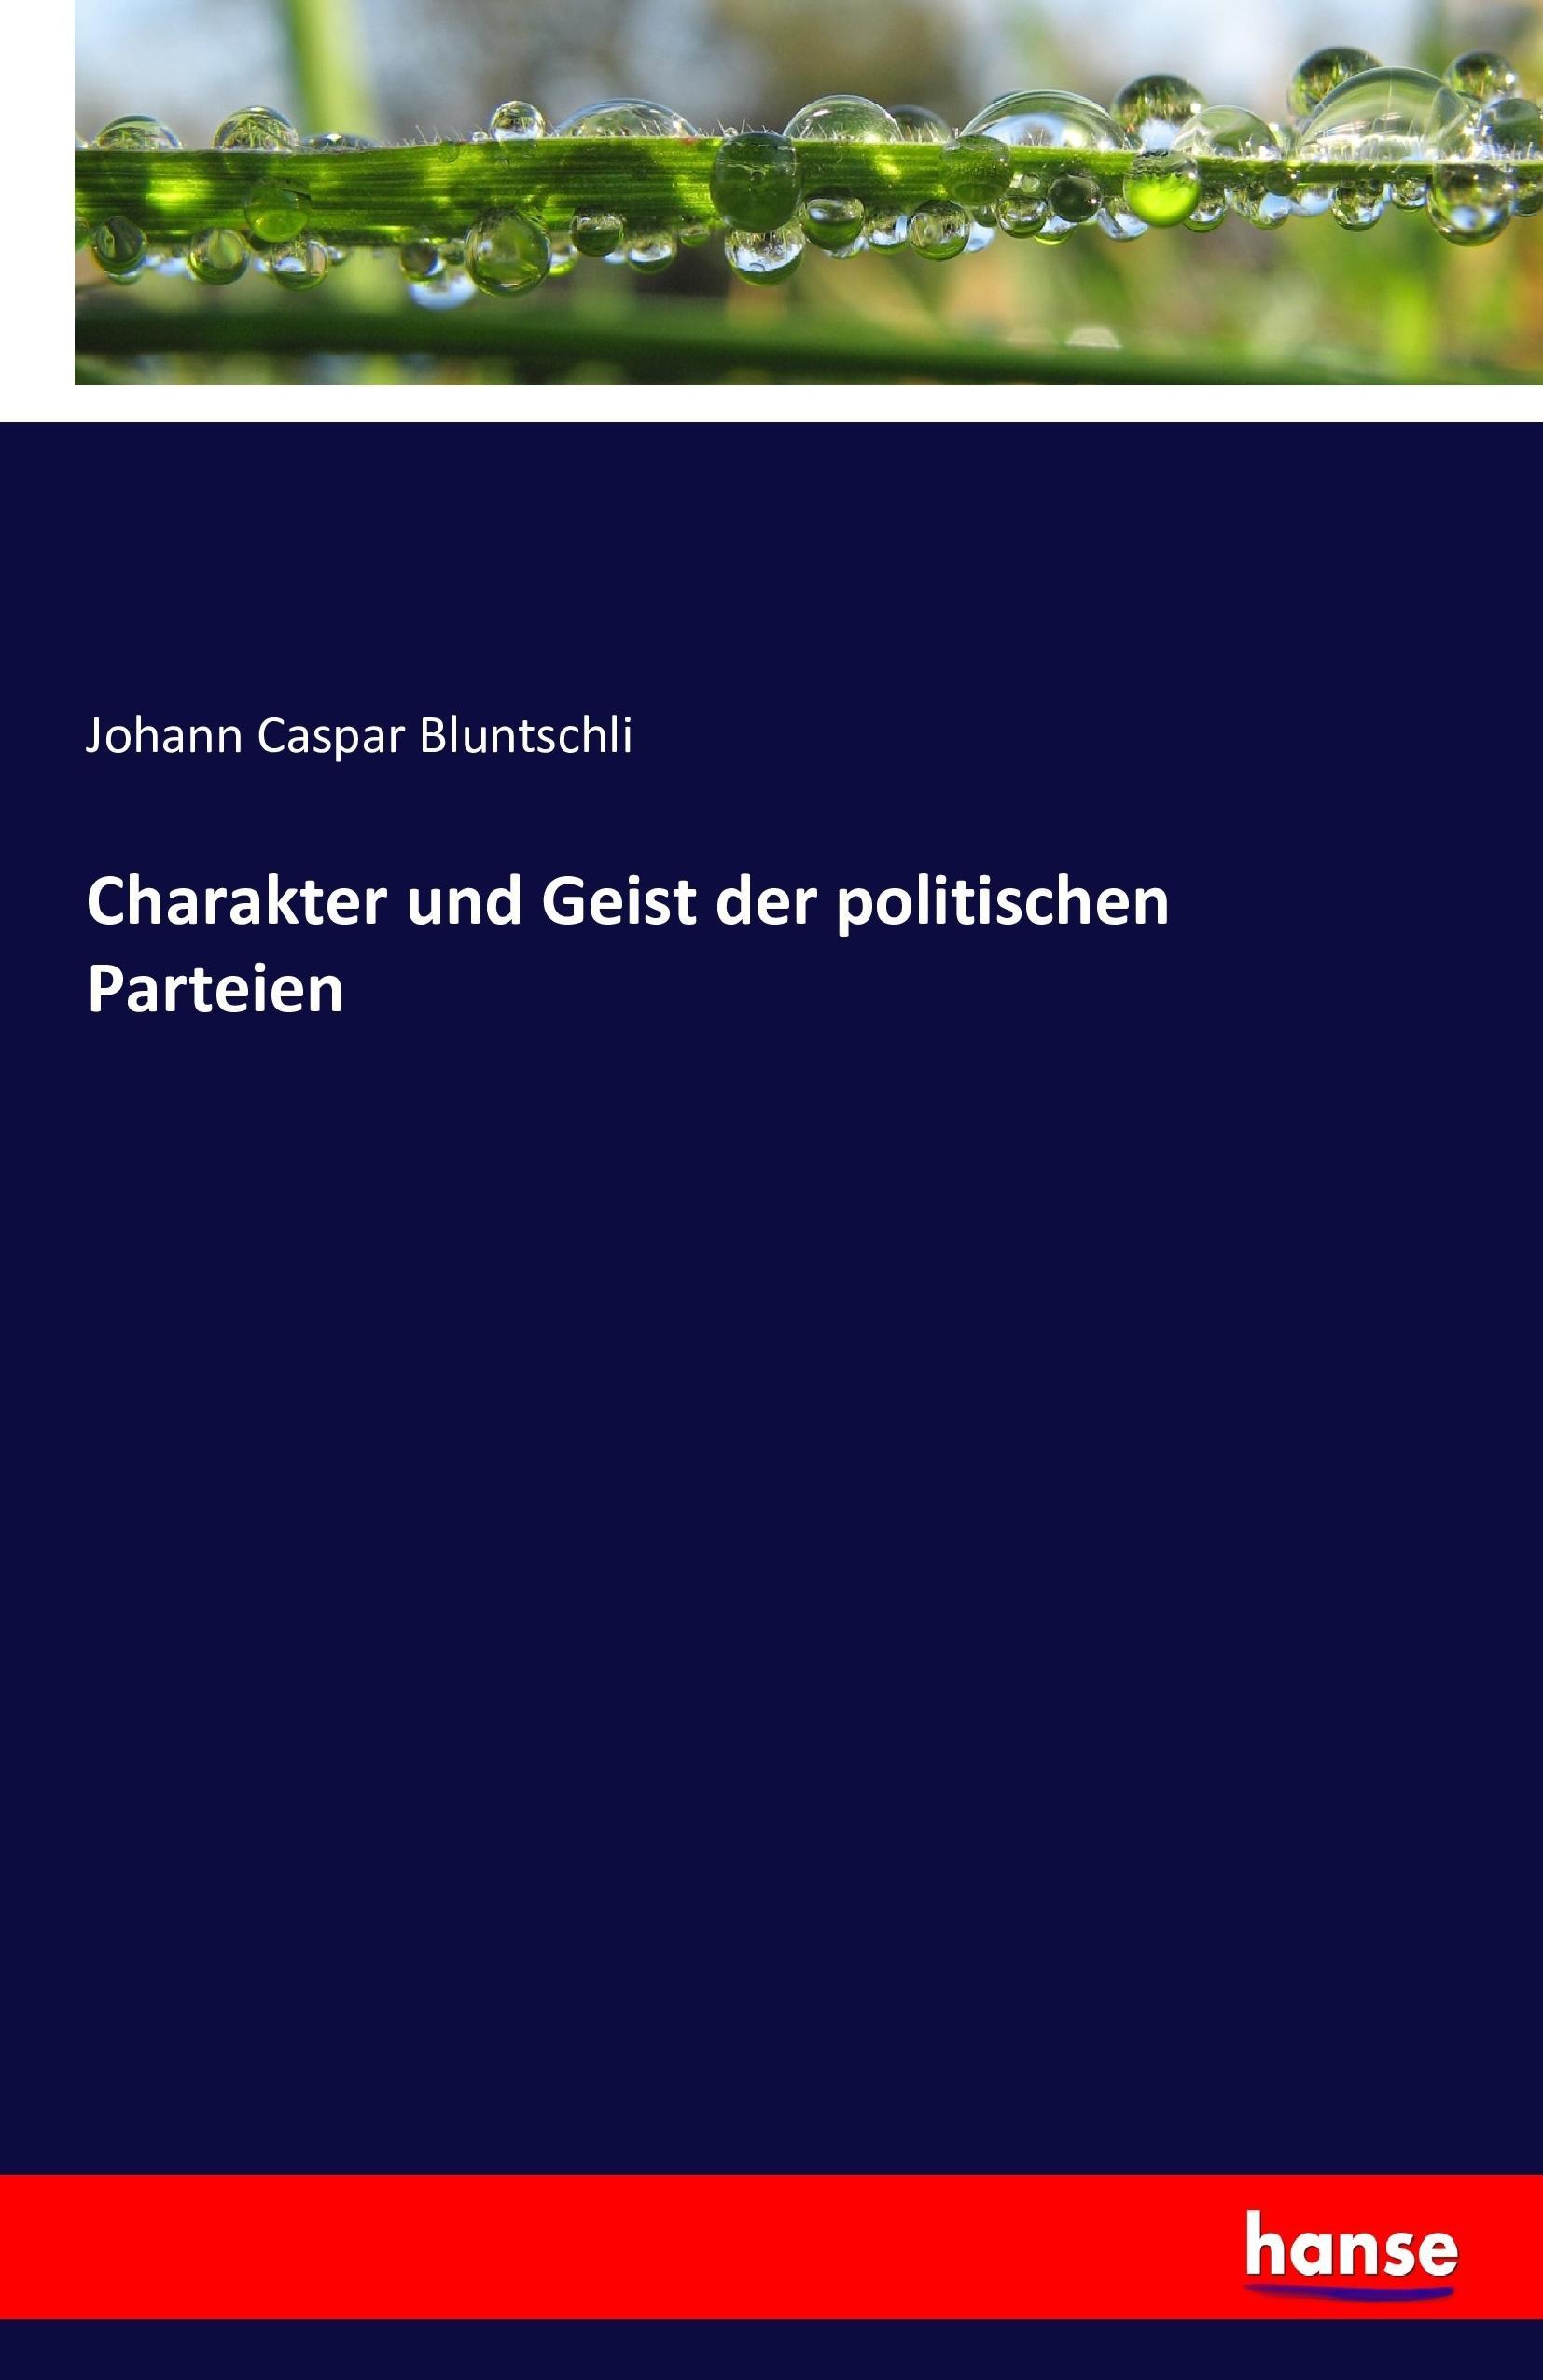 Charakter und Geist der politischen Parteien - Bluntschli, Johann Caspar